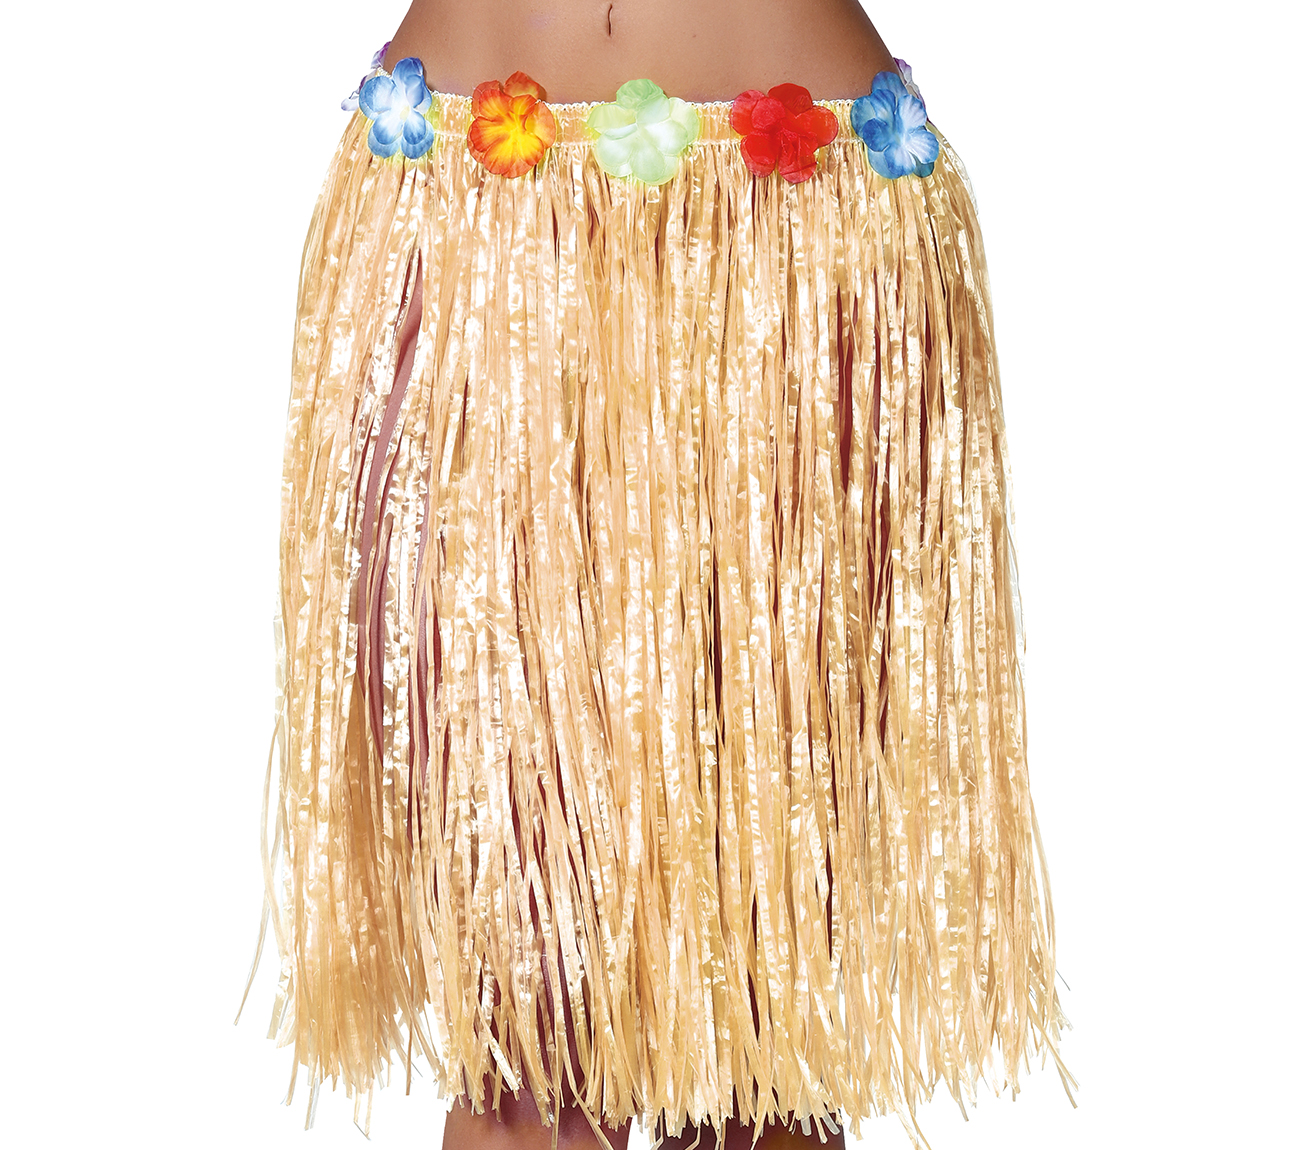 Guirca Slamenná havajská sukně s kvítky 50 cm